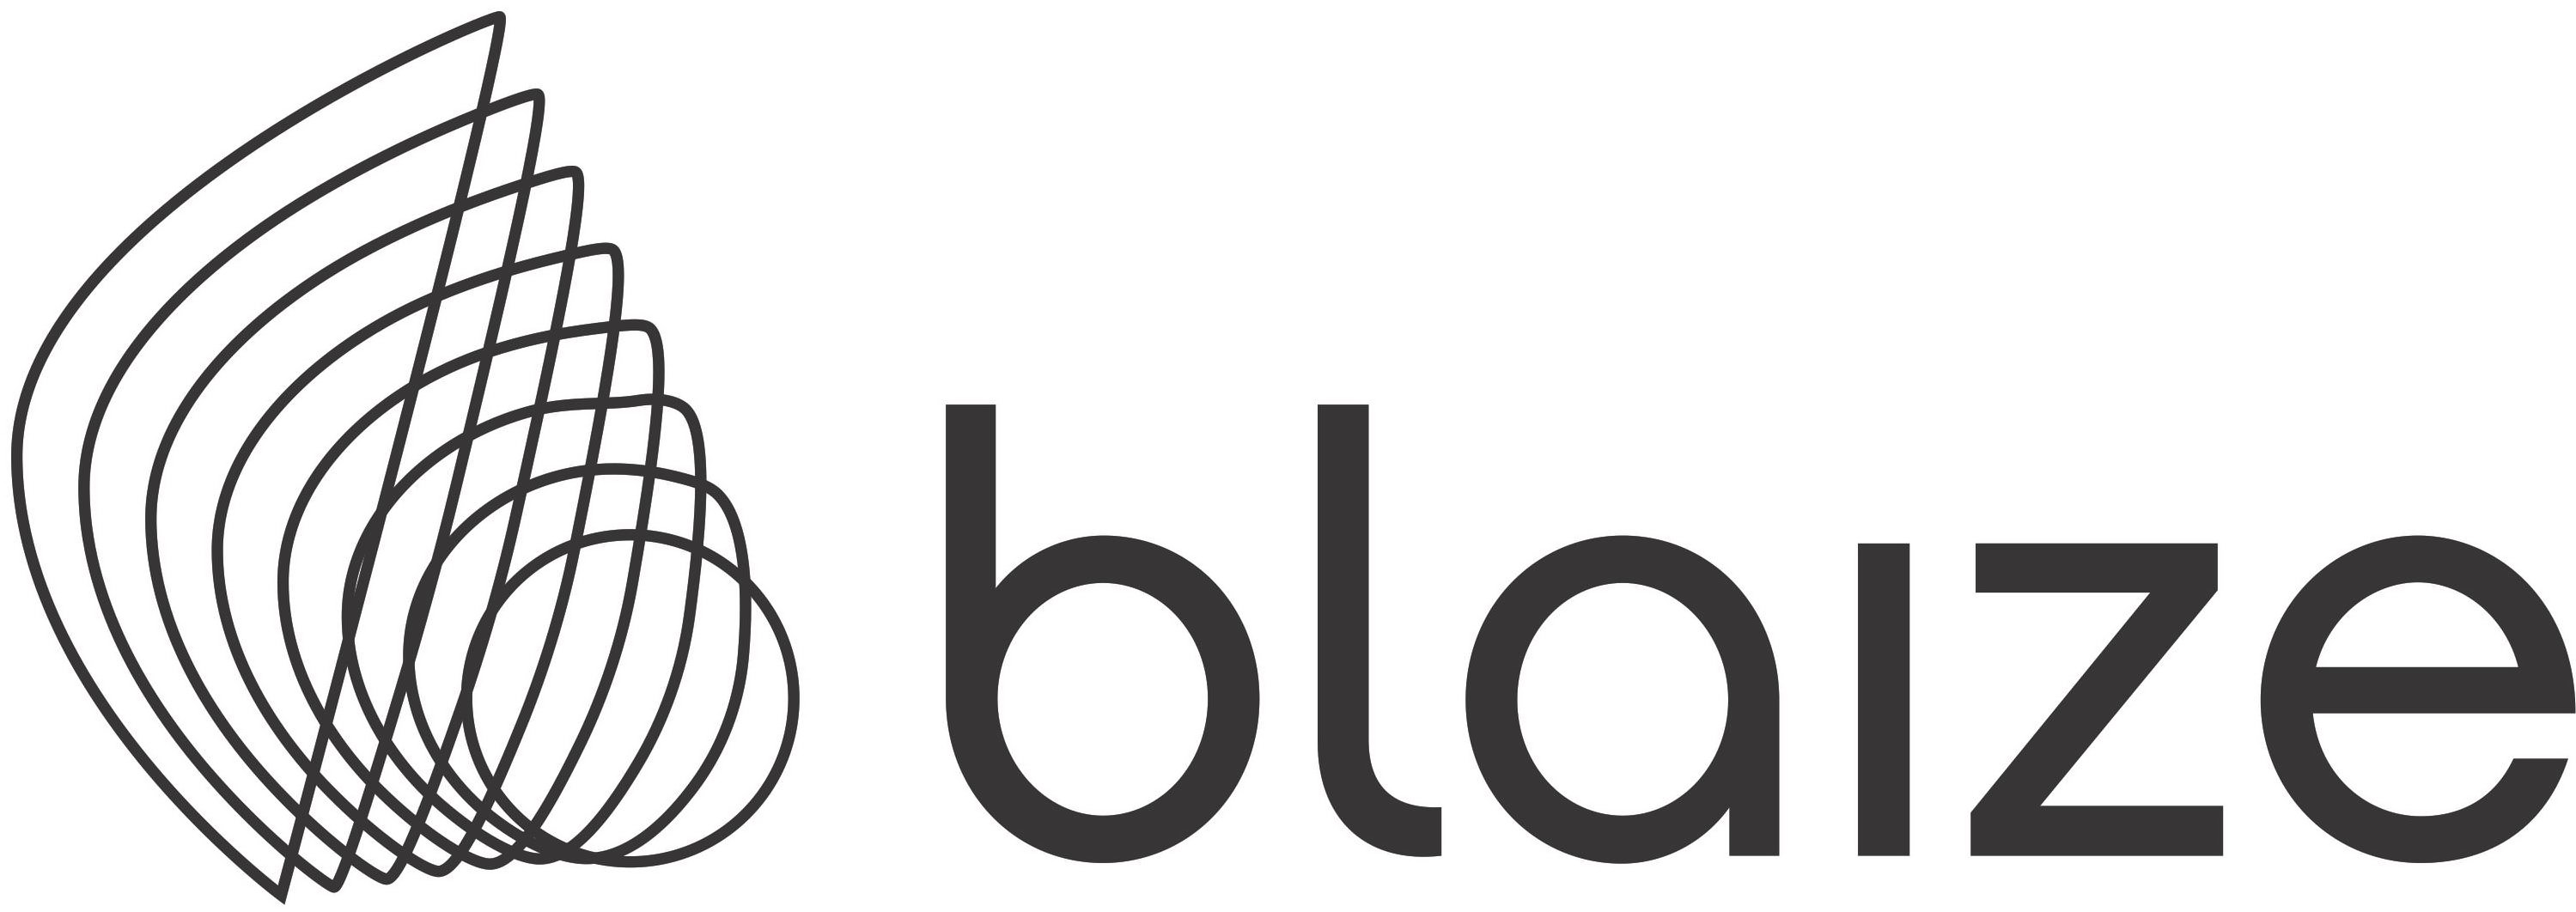 Trademark Logo BLAIZE